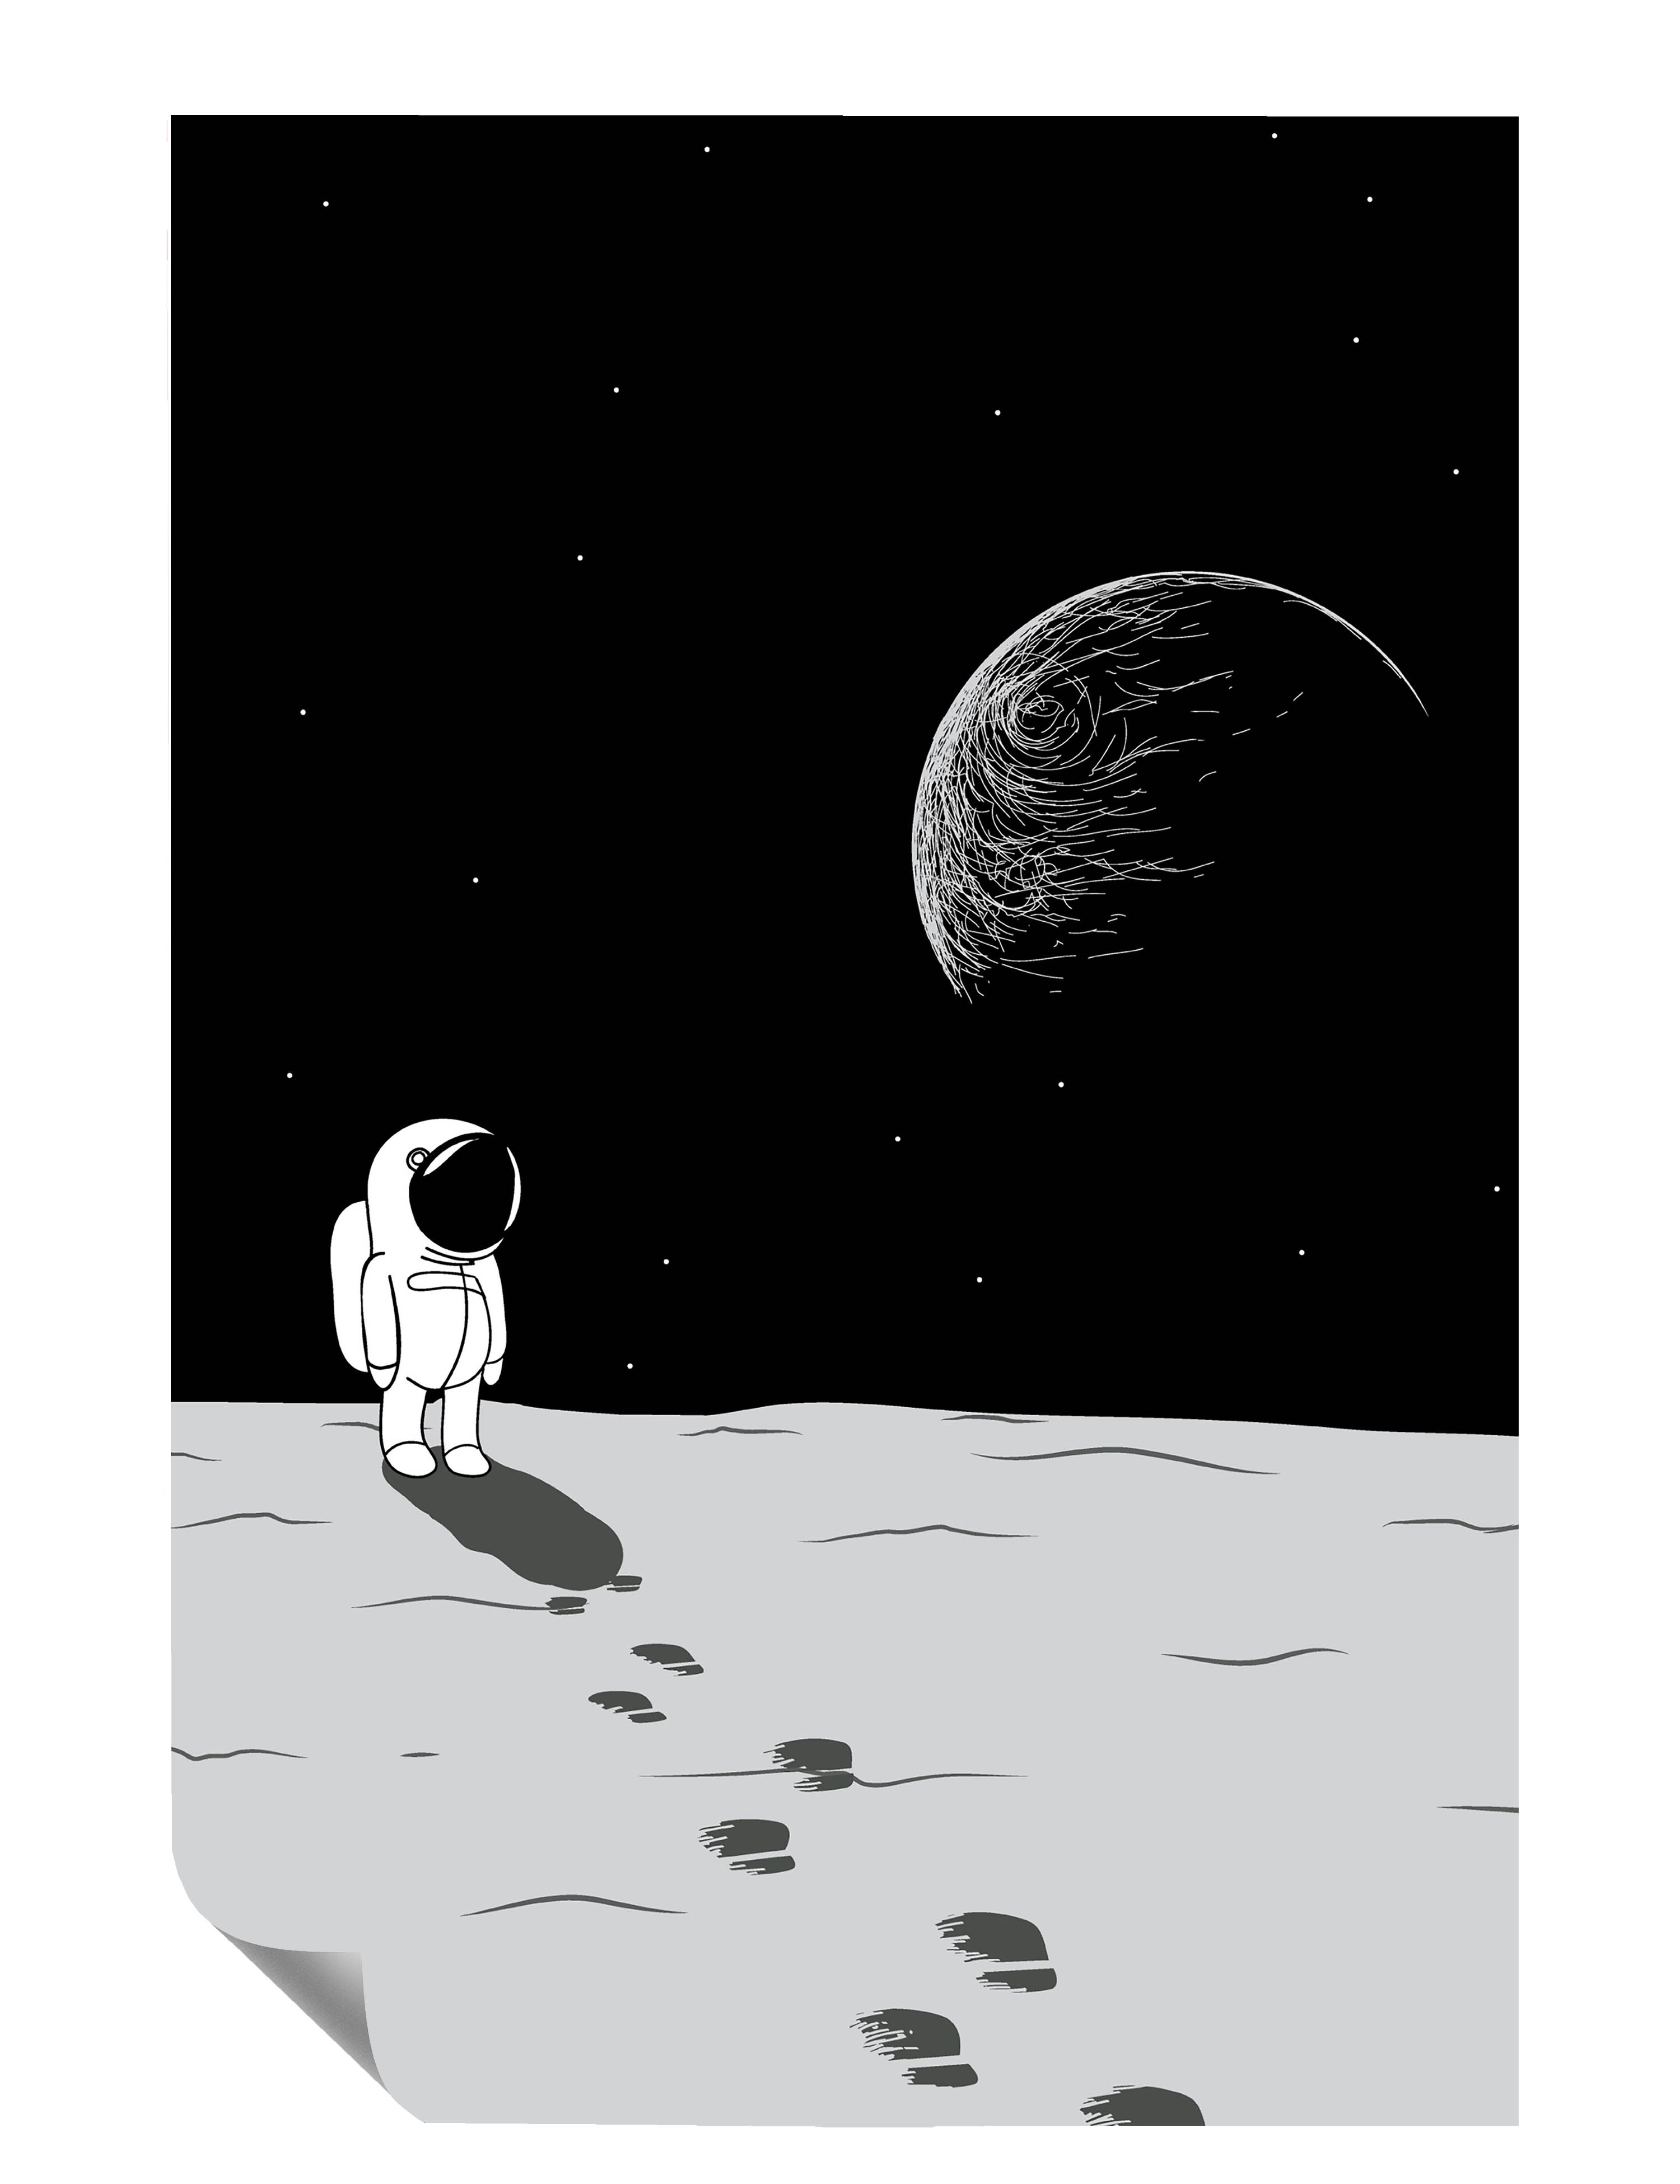 Kleiner Astronaut Mond Erde Weltraum Fußspuren Illustration Kunstdruck Poster P0441